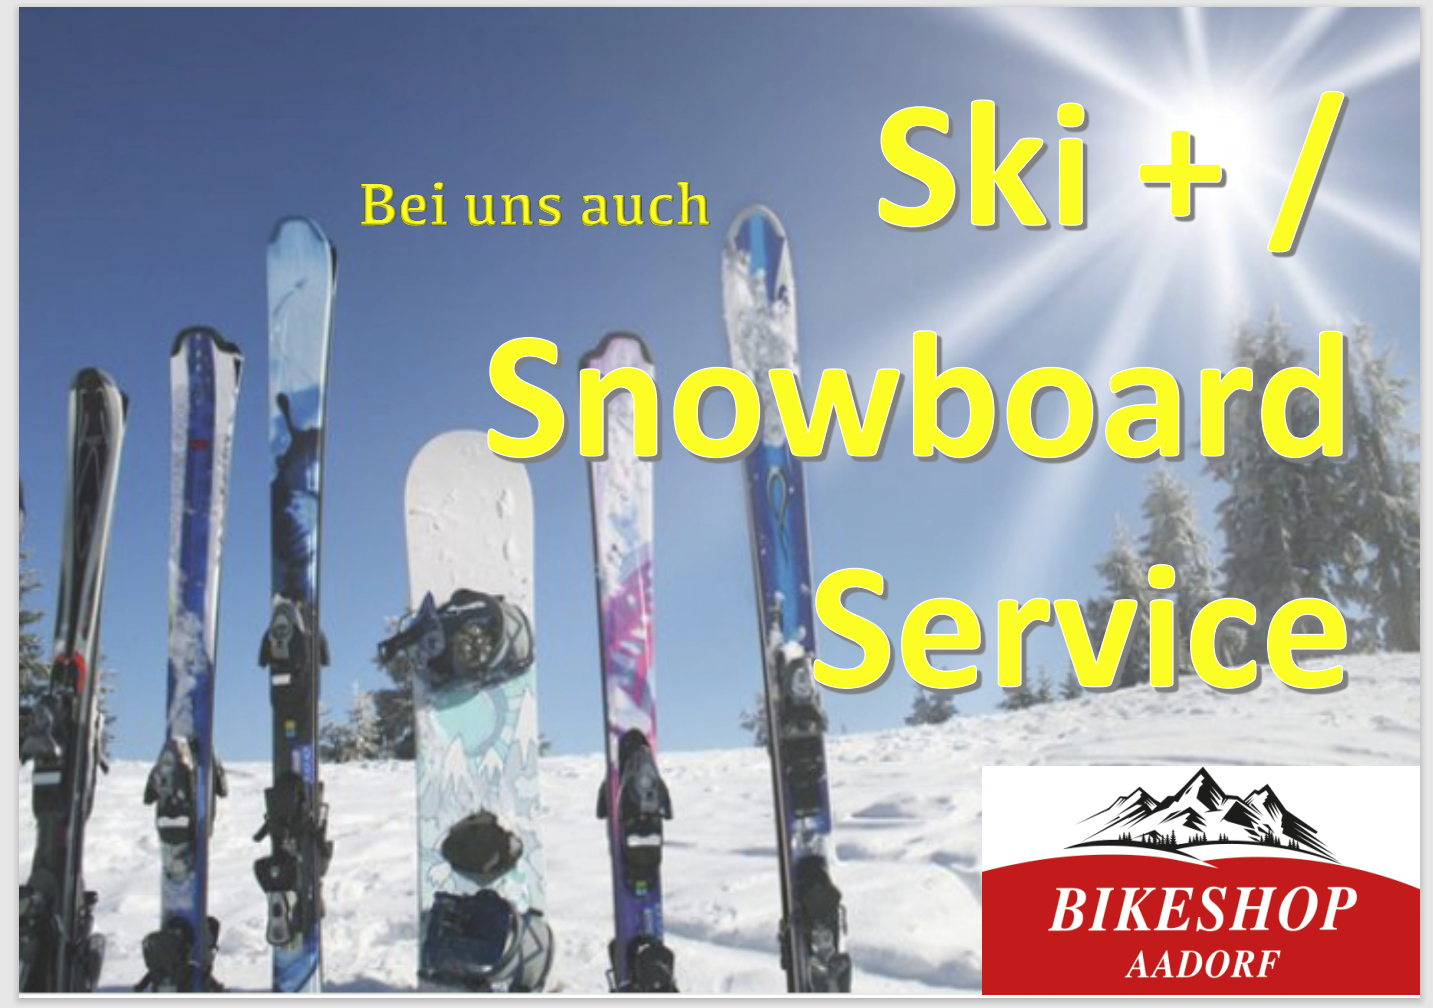 Ski / Langlaufservice